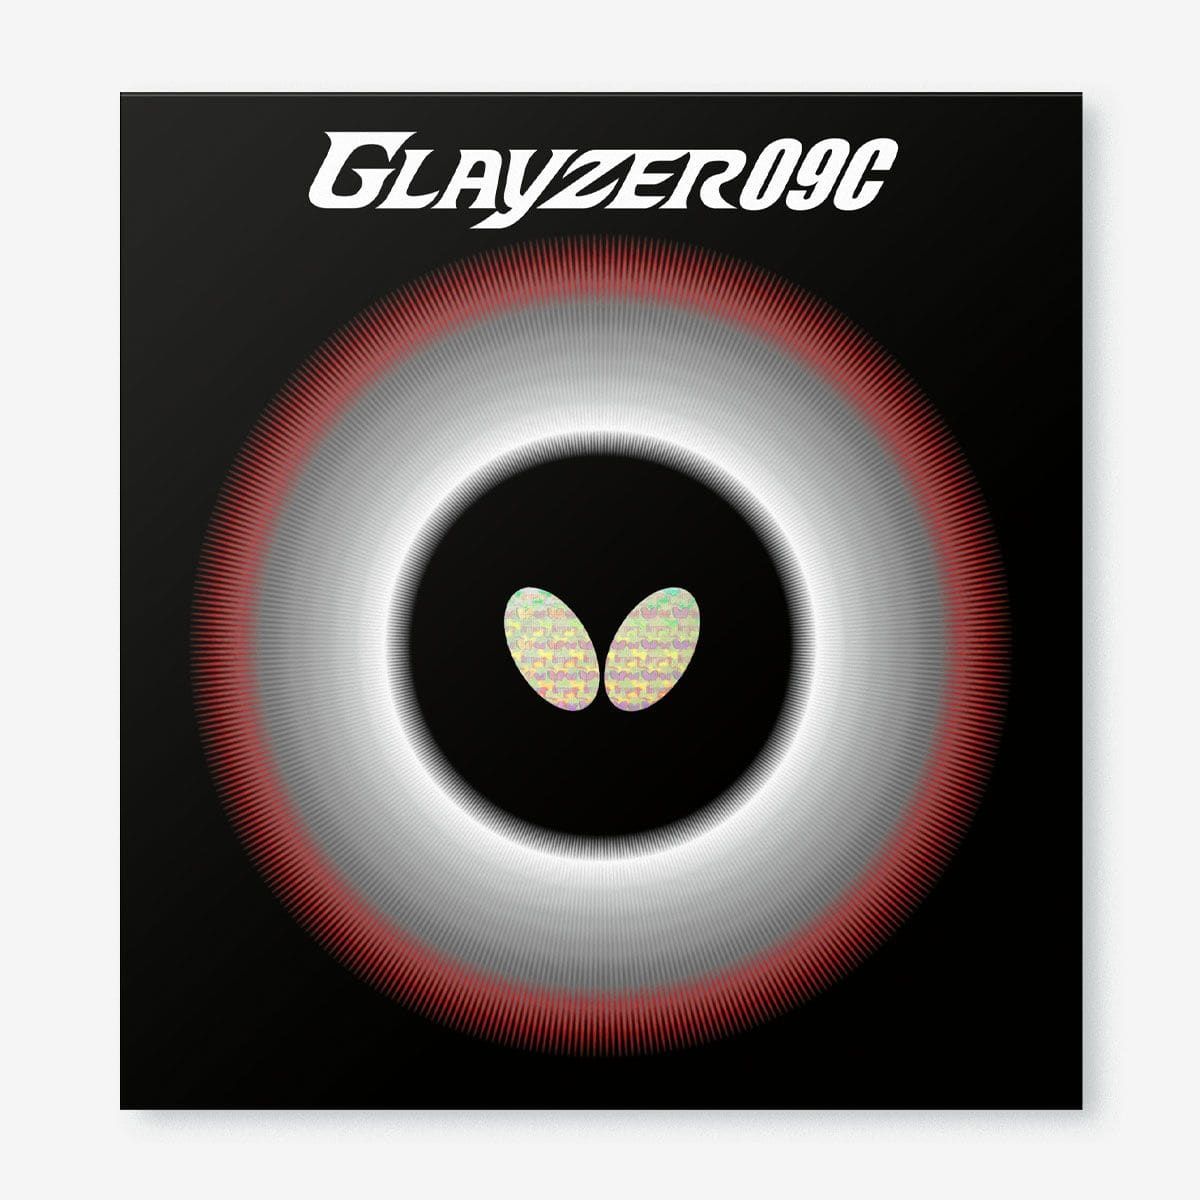 BUTTERFLY - rubber Glayzer 09C